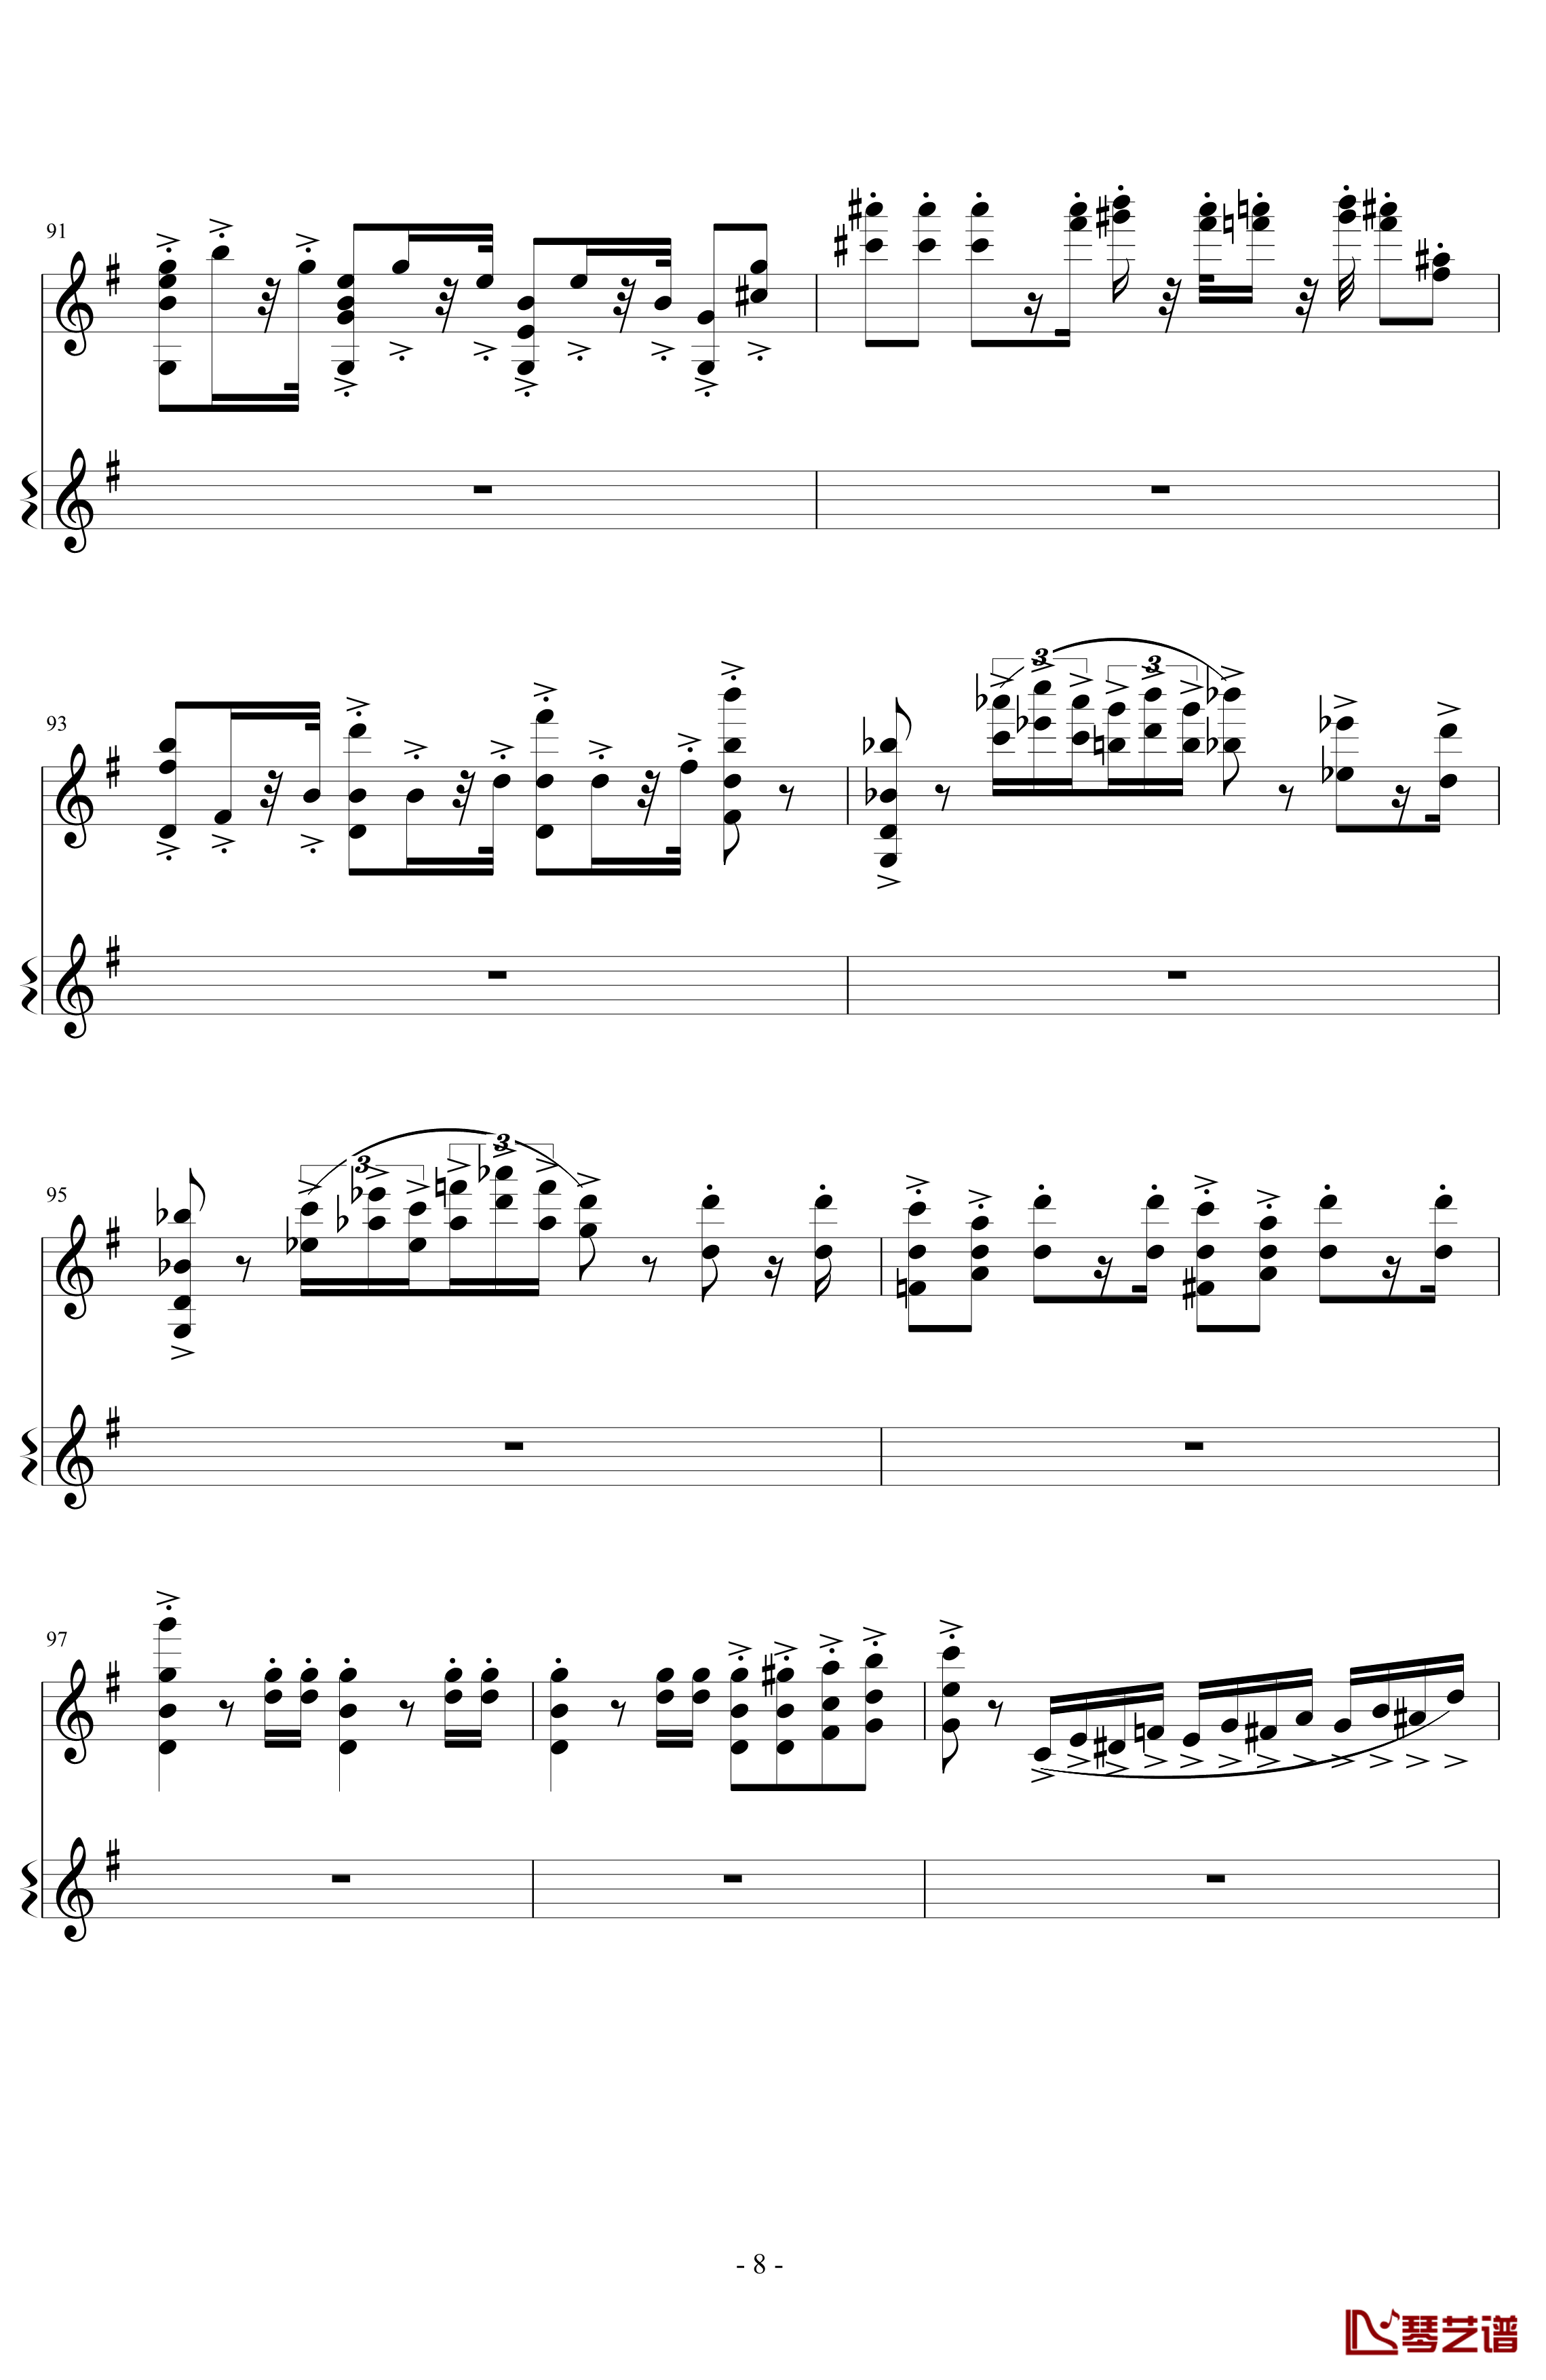 意大利国歌变奏曲钢琴谱-DXF8